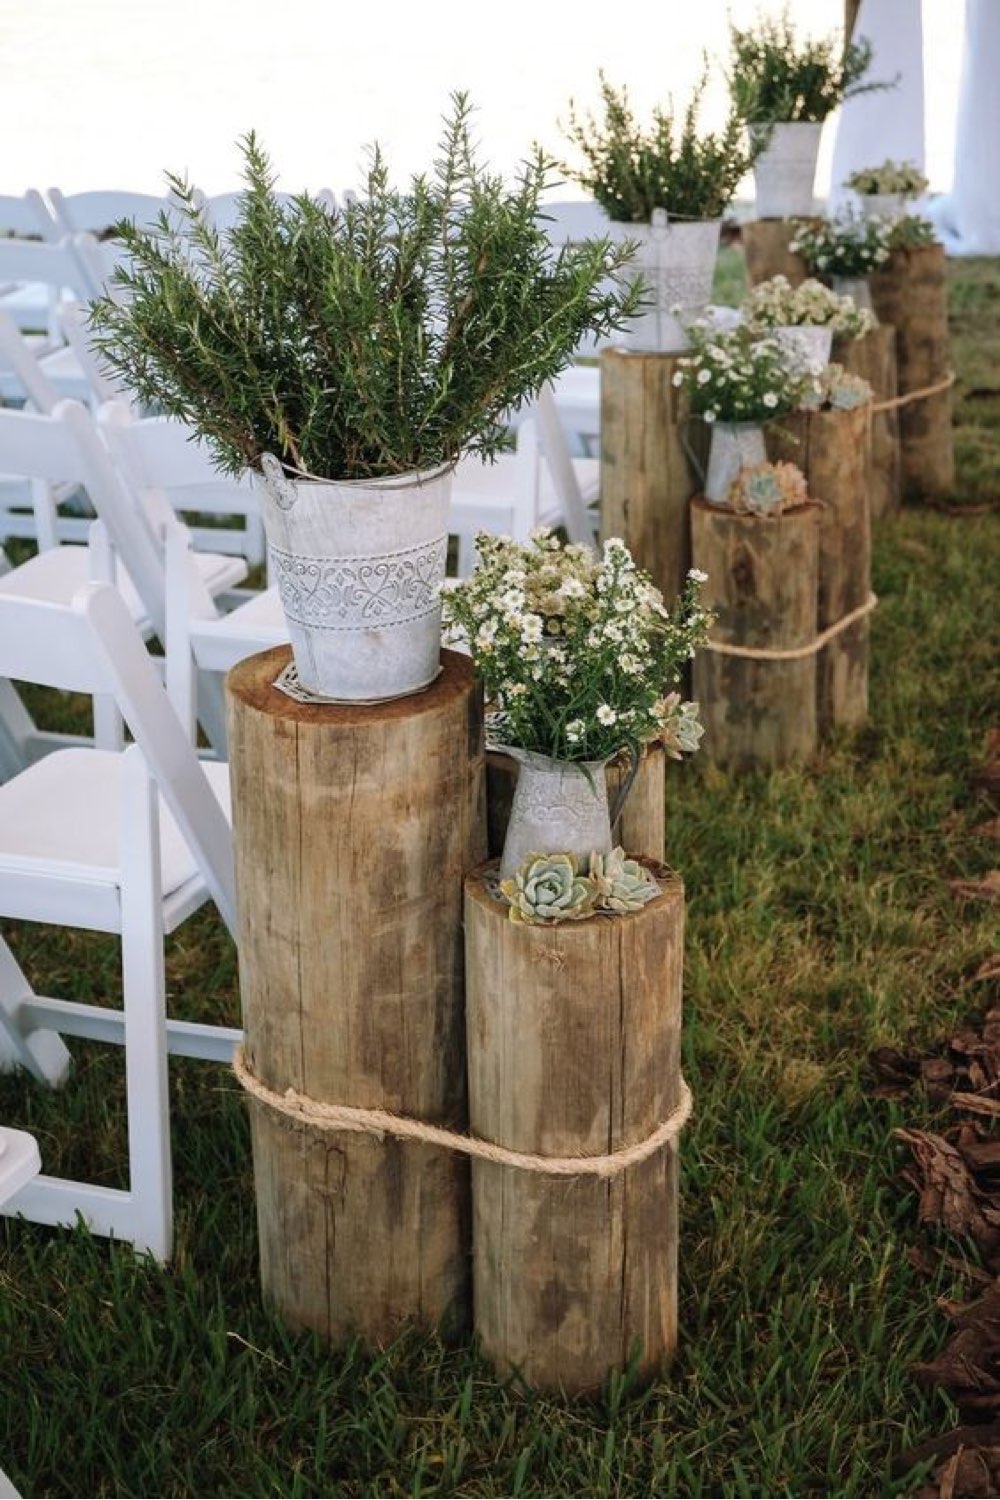 decoration mariage champetre romantique détail décoratif à côté des chaises cérémonie tronc d'arbres pots de fleur plantes ficelle